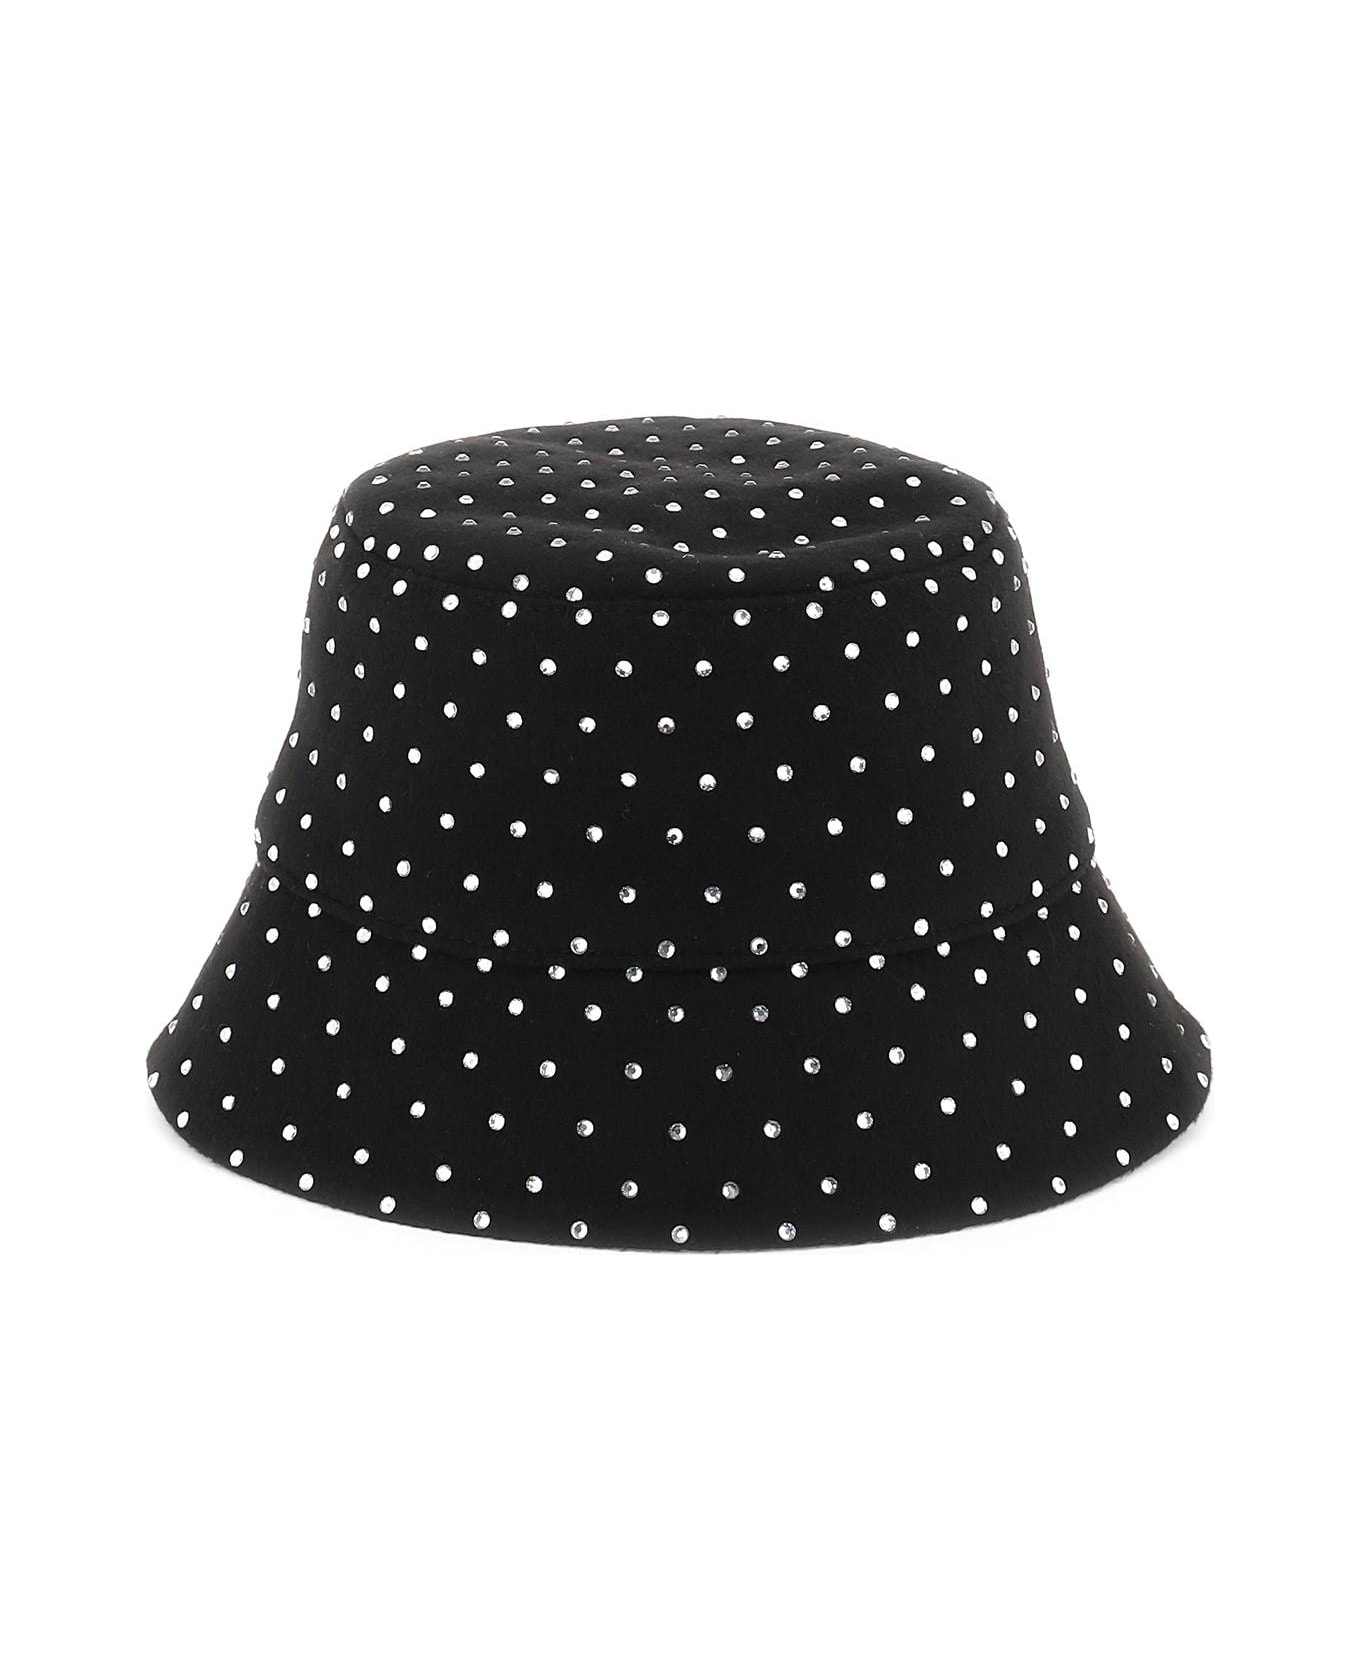 Ruslan Baginskiy Bucket Hat With Rhinestones - BLACK (Black)